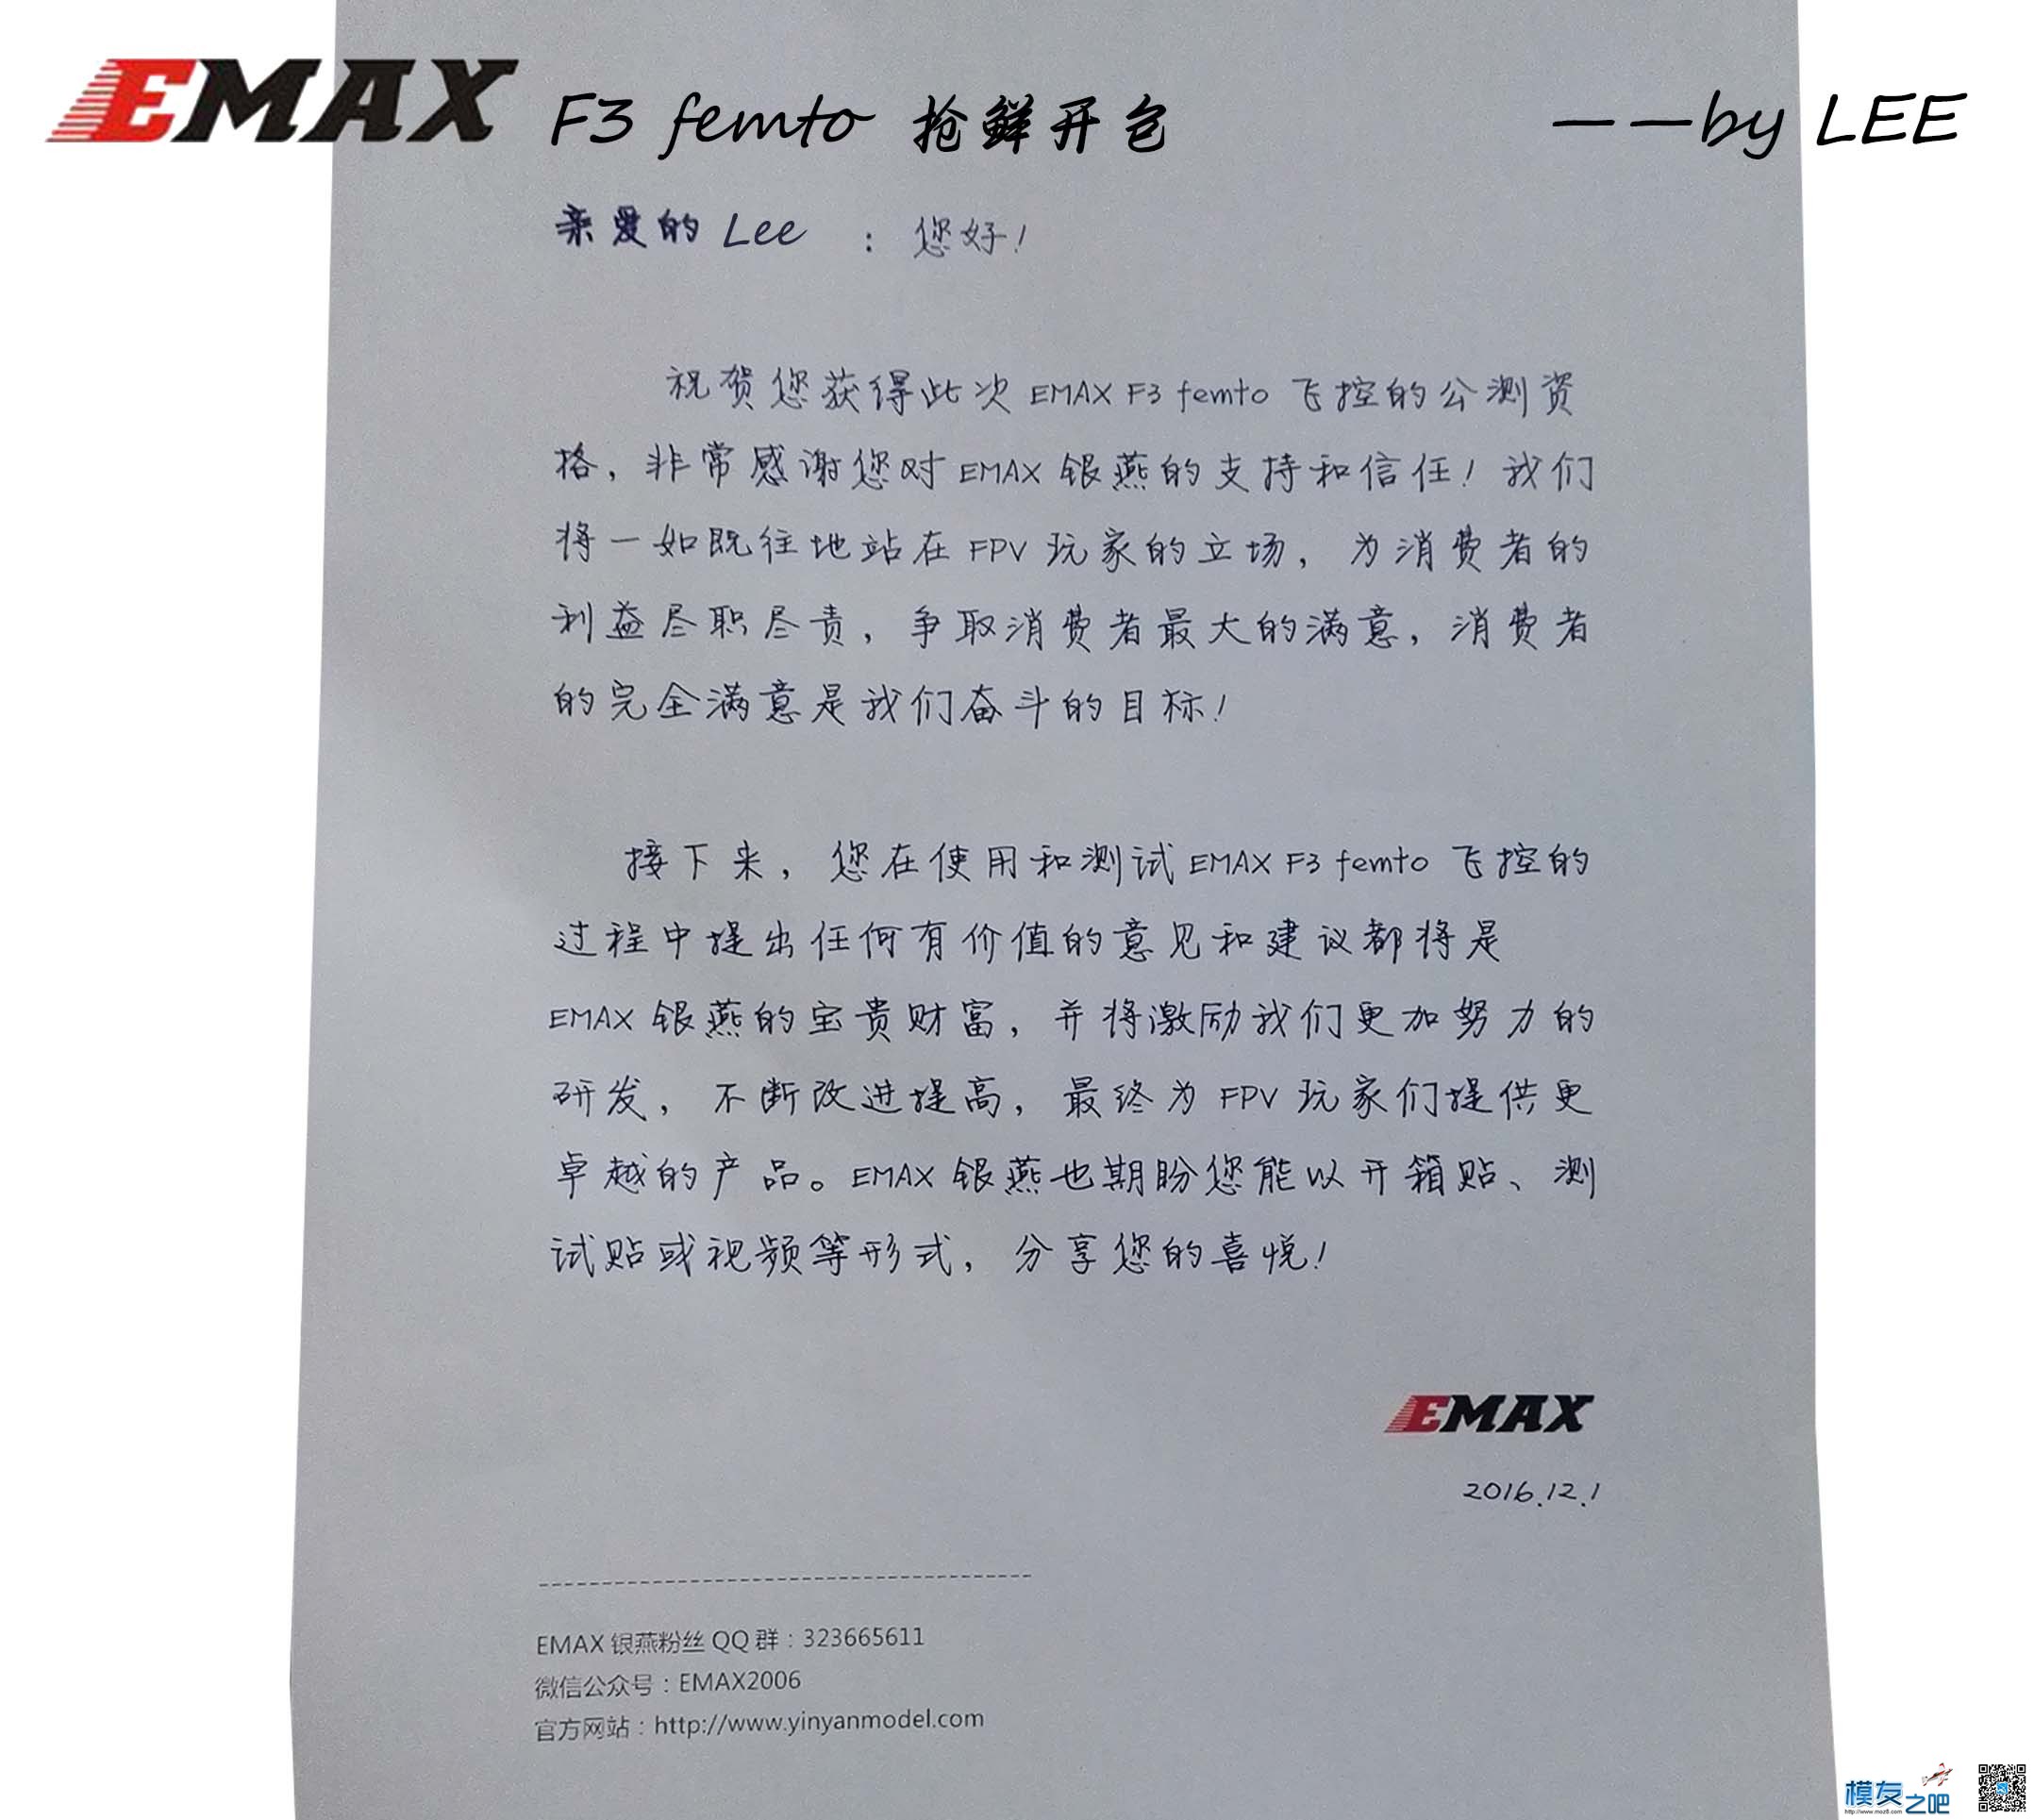 [LEE]EMAX 银燕 F3 femto飞控免费公测开包 飞控,银燕,免费,emax,有限公司 作者:lee 6309 